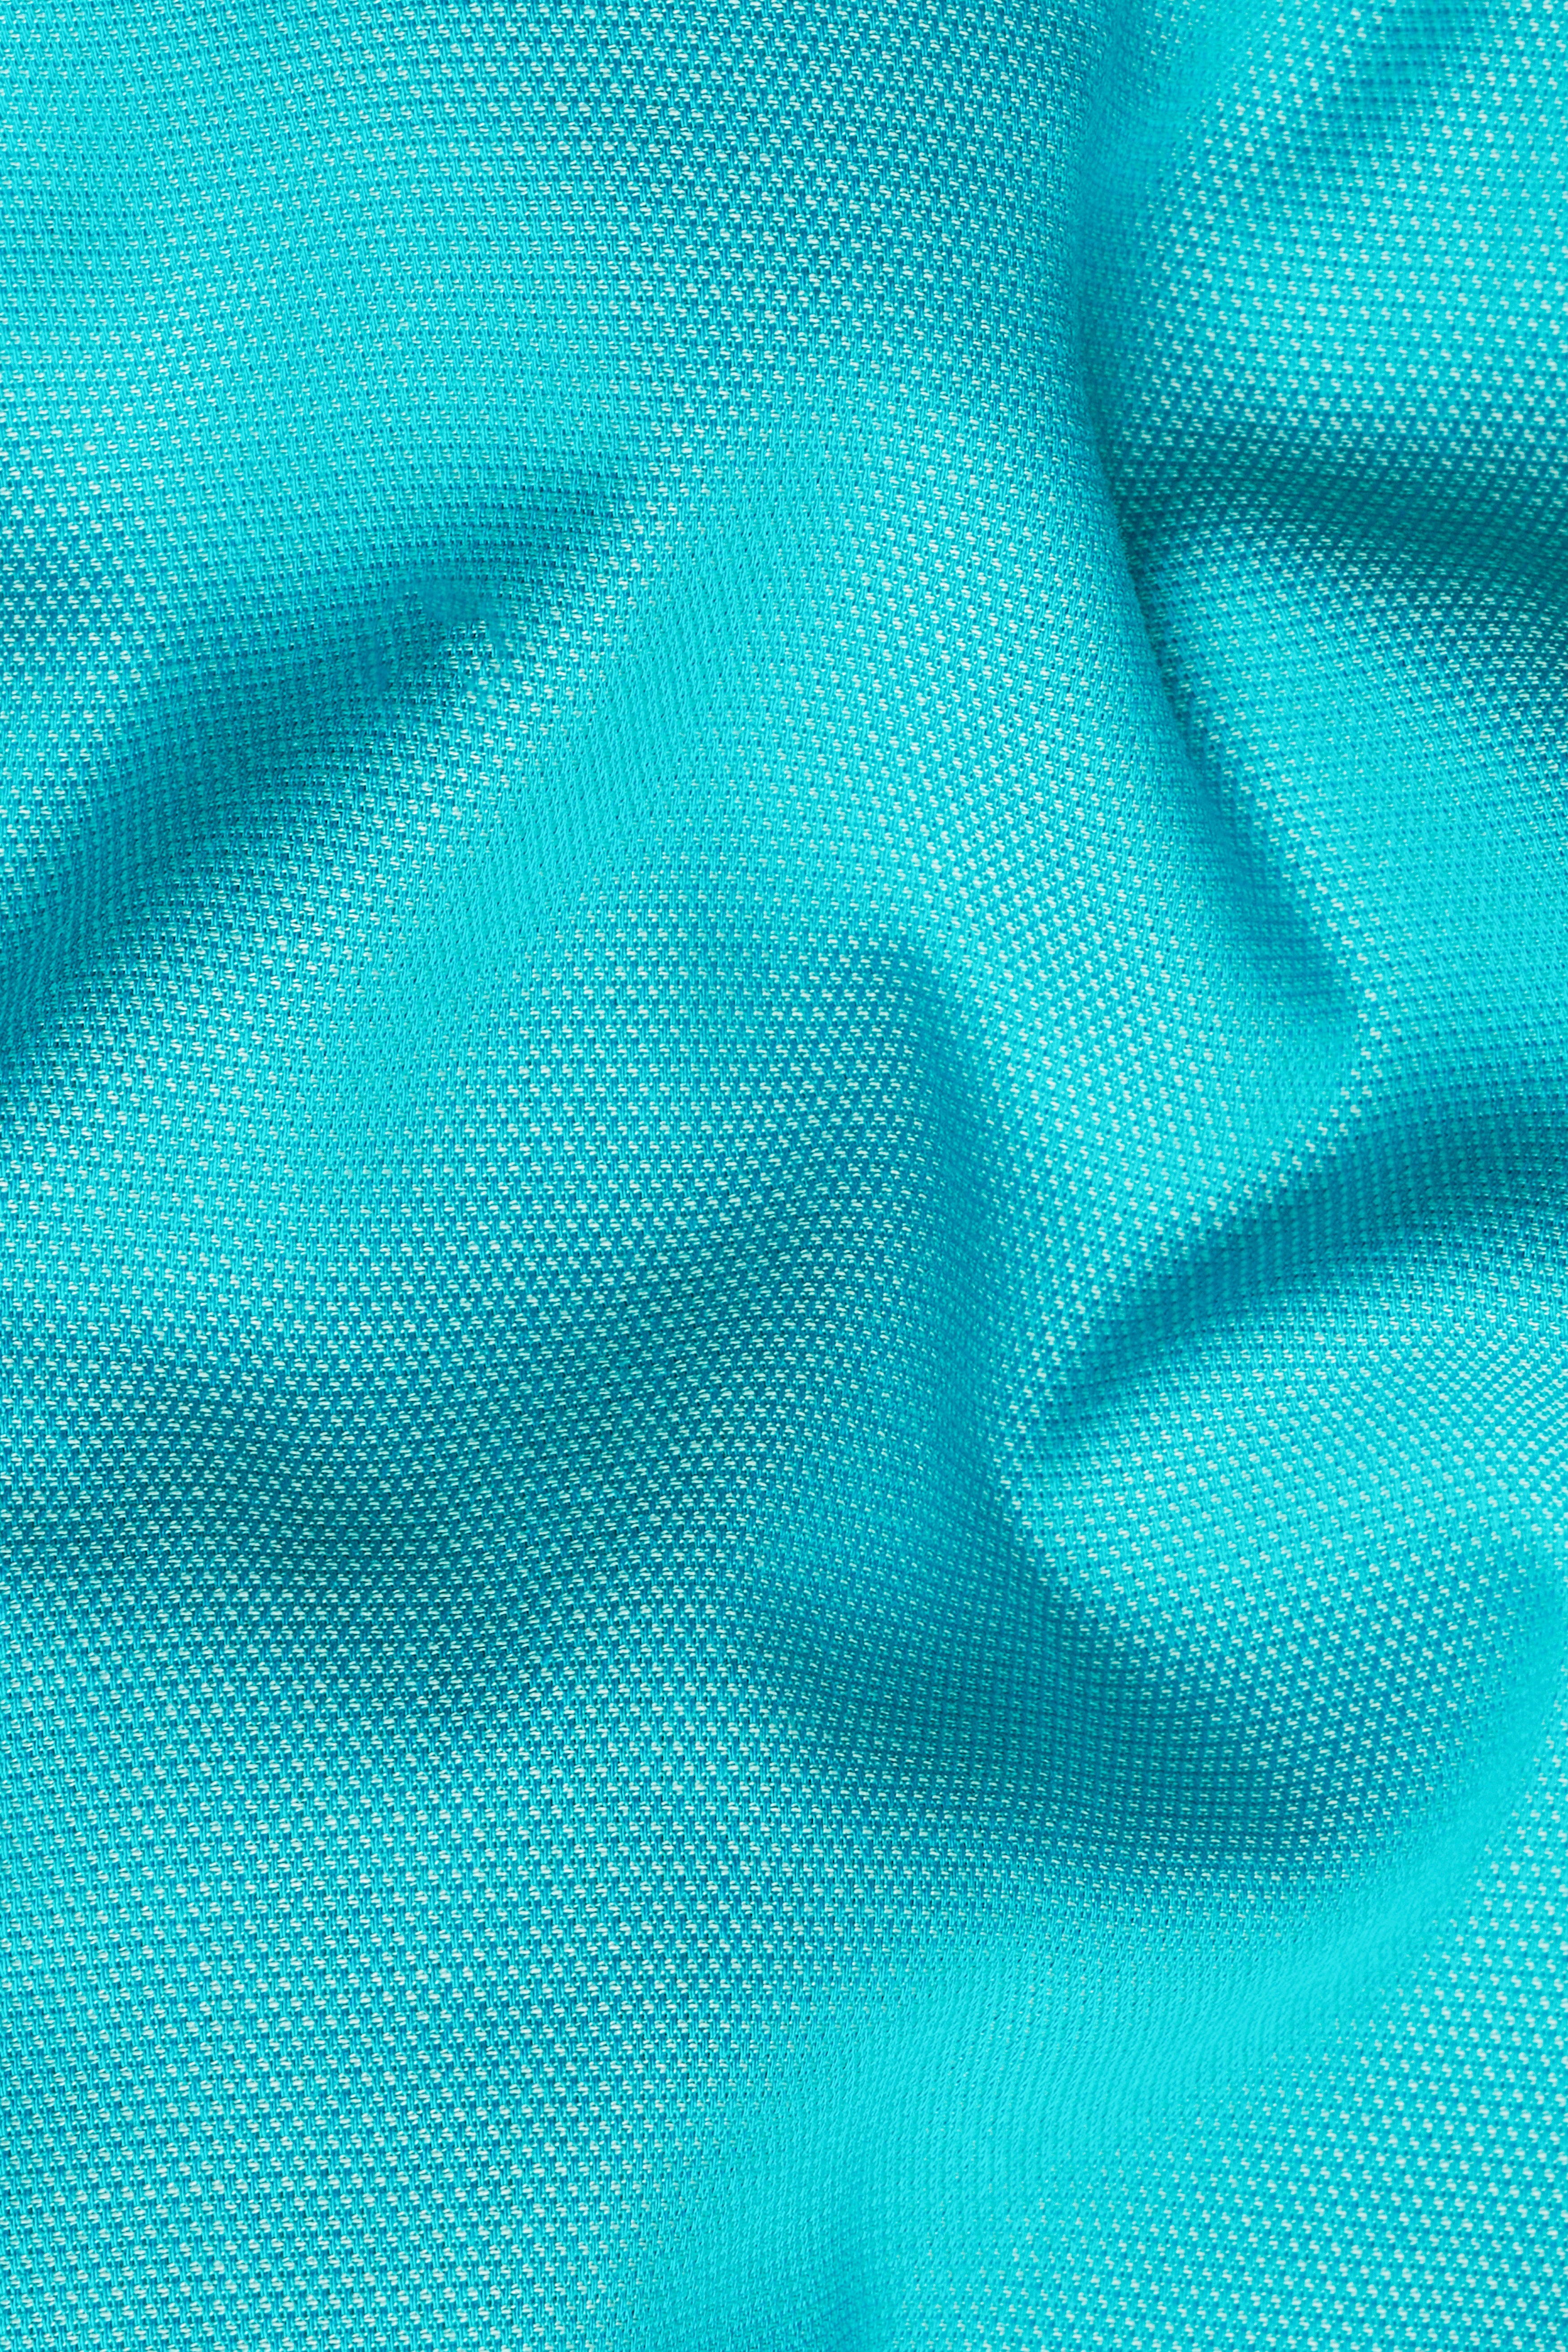 Cerulean Blue Textured Dobby Premium Giza Cotton Boxer BX519-28, BX519-30, BX519-32, BX519-34, BX519-36, BX519-38, BX519-40, BX519-42, BX519-44